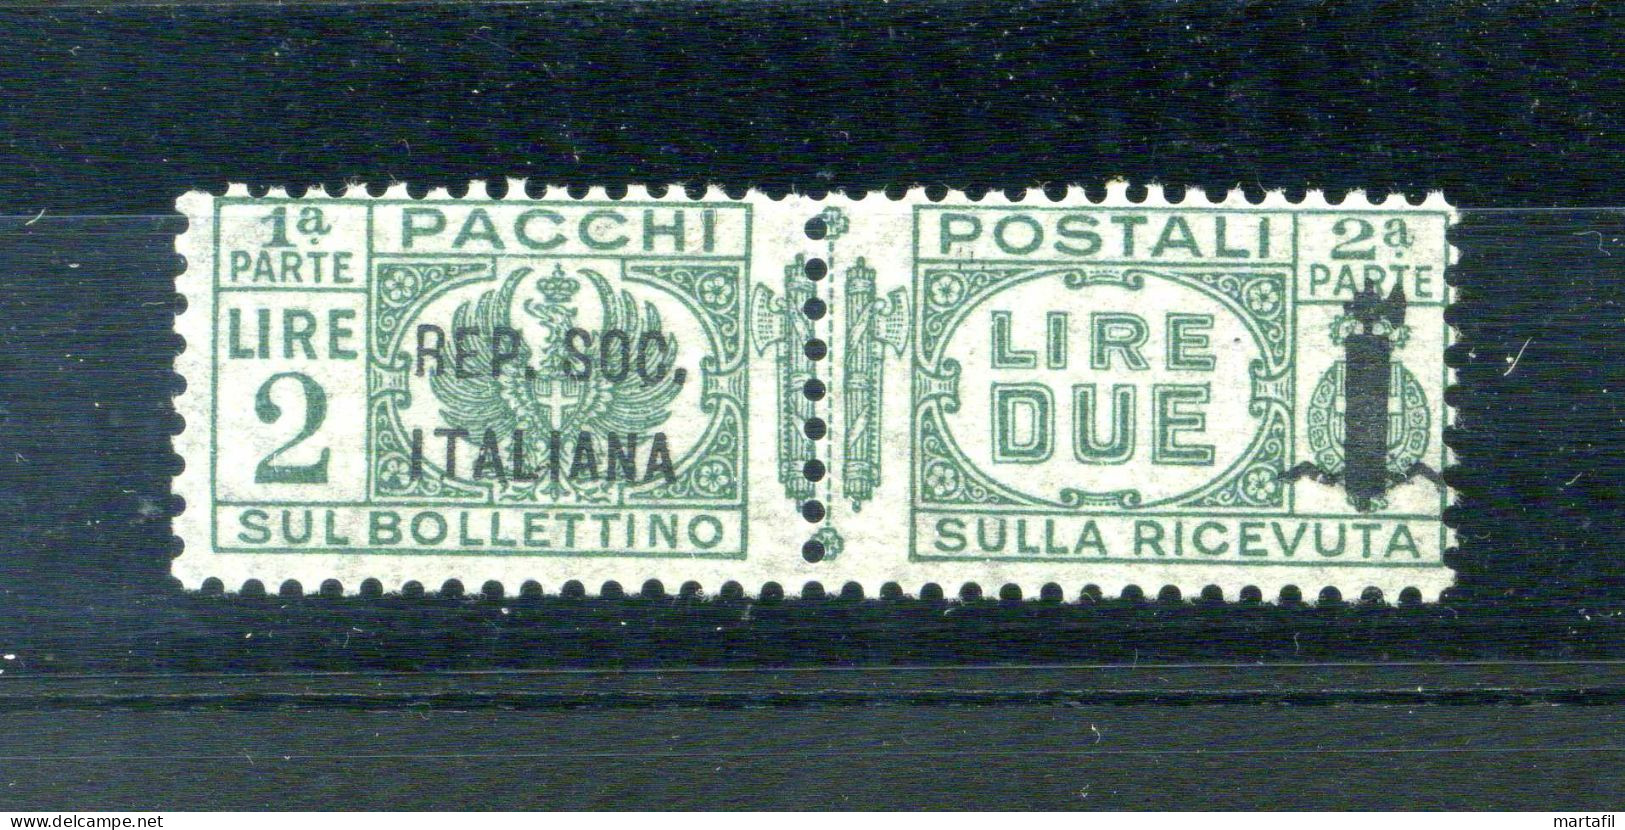 1944 Repubblica Sociale Italiana RSI Pacchi Postali N.43 2 Lire Verde MNH **, Firmato RAYBAUDI - Postal Parcels